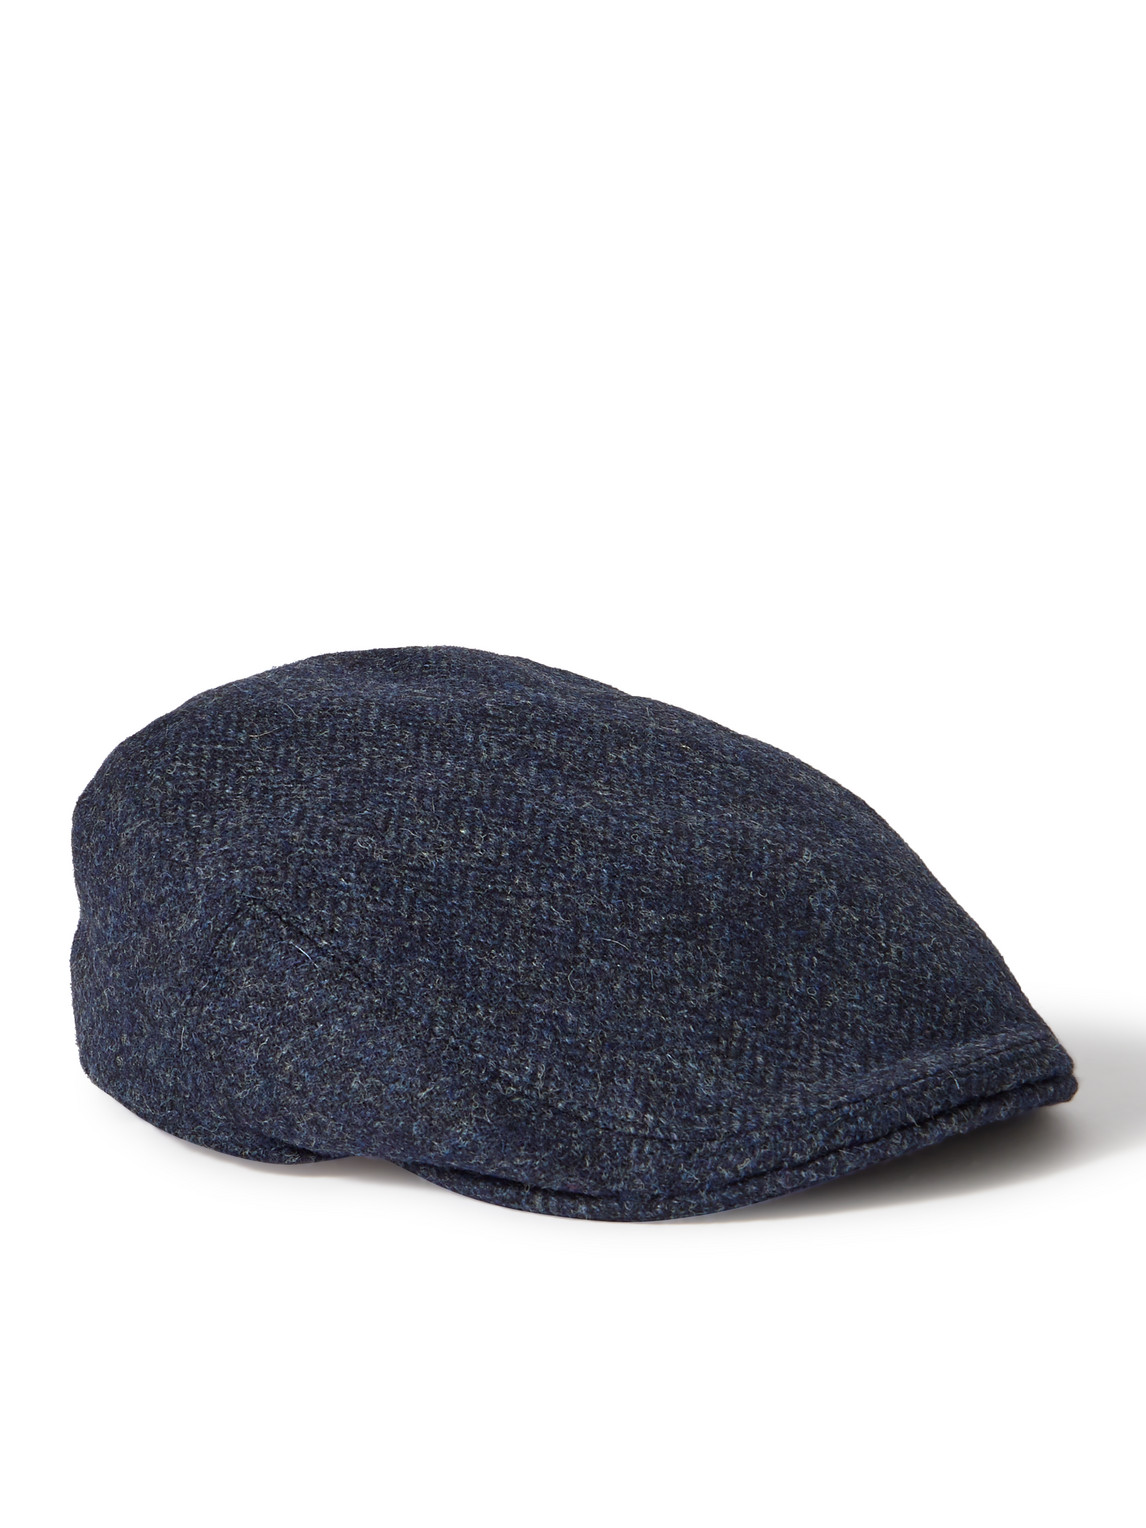 Herringbone Wool-Tweed Flat Cap